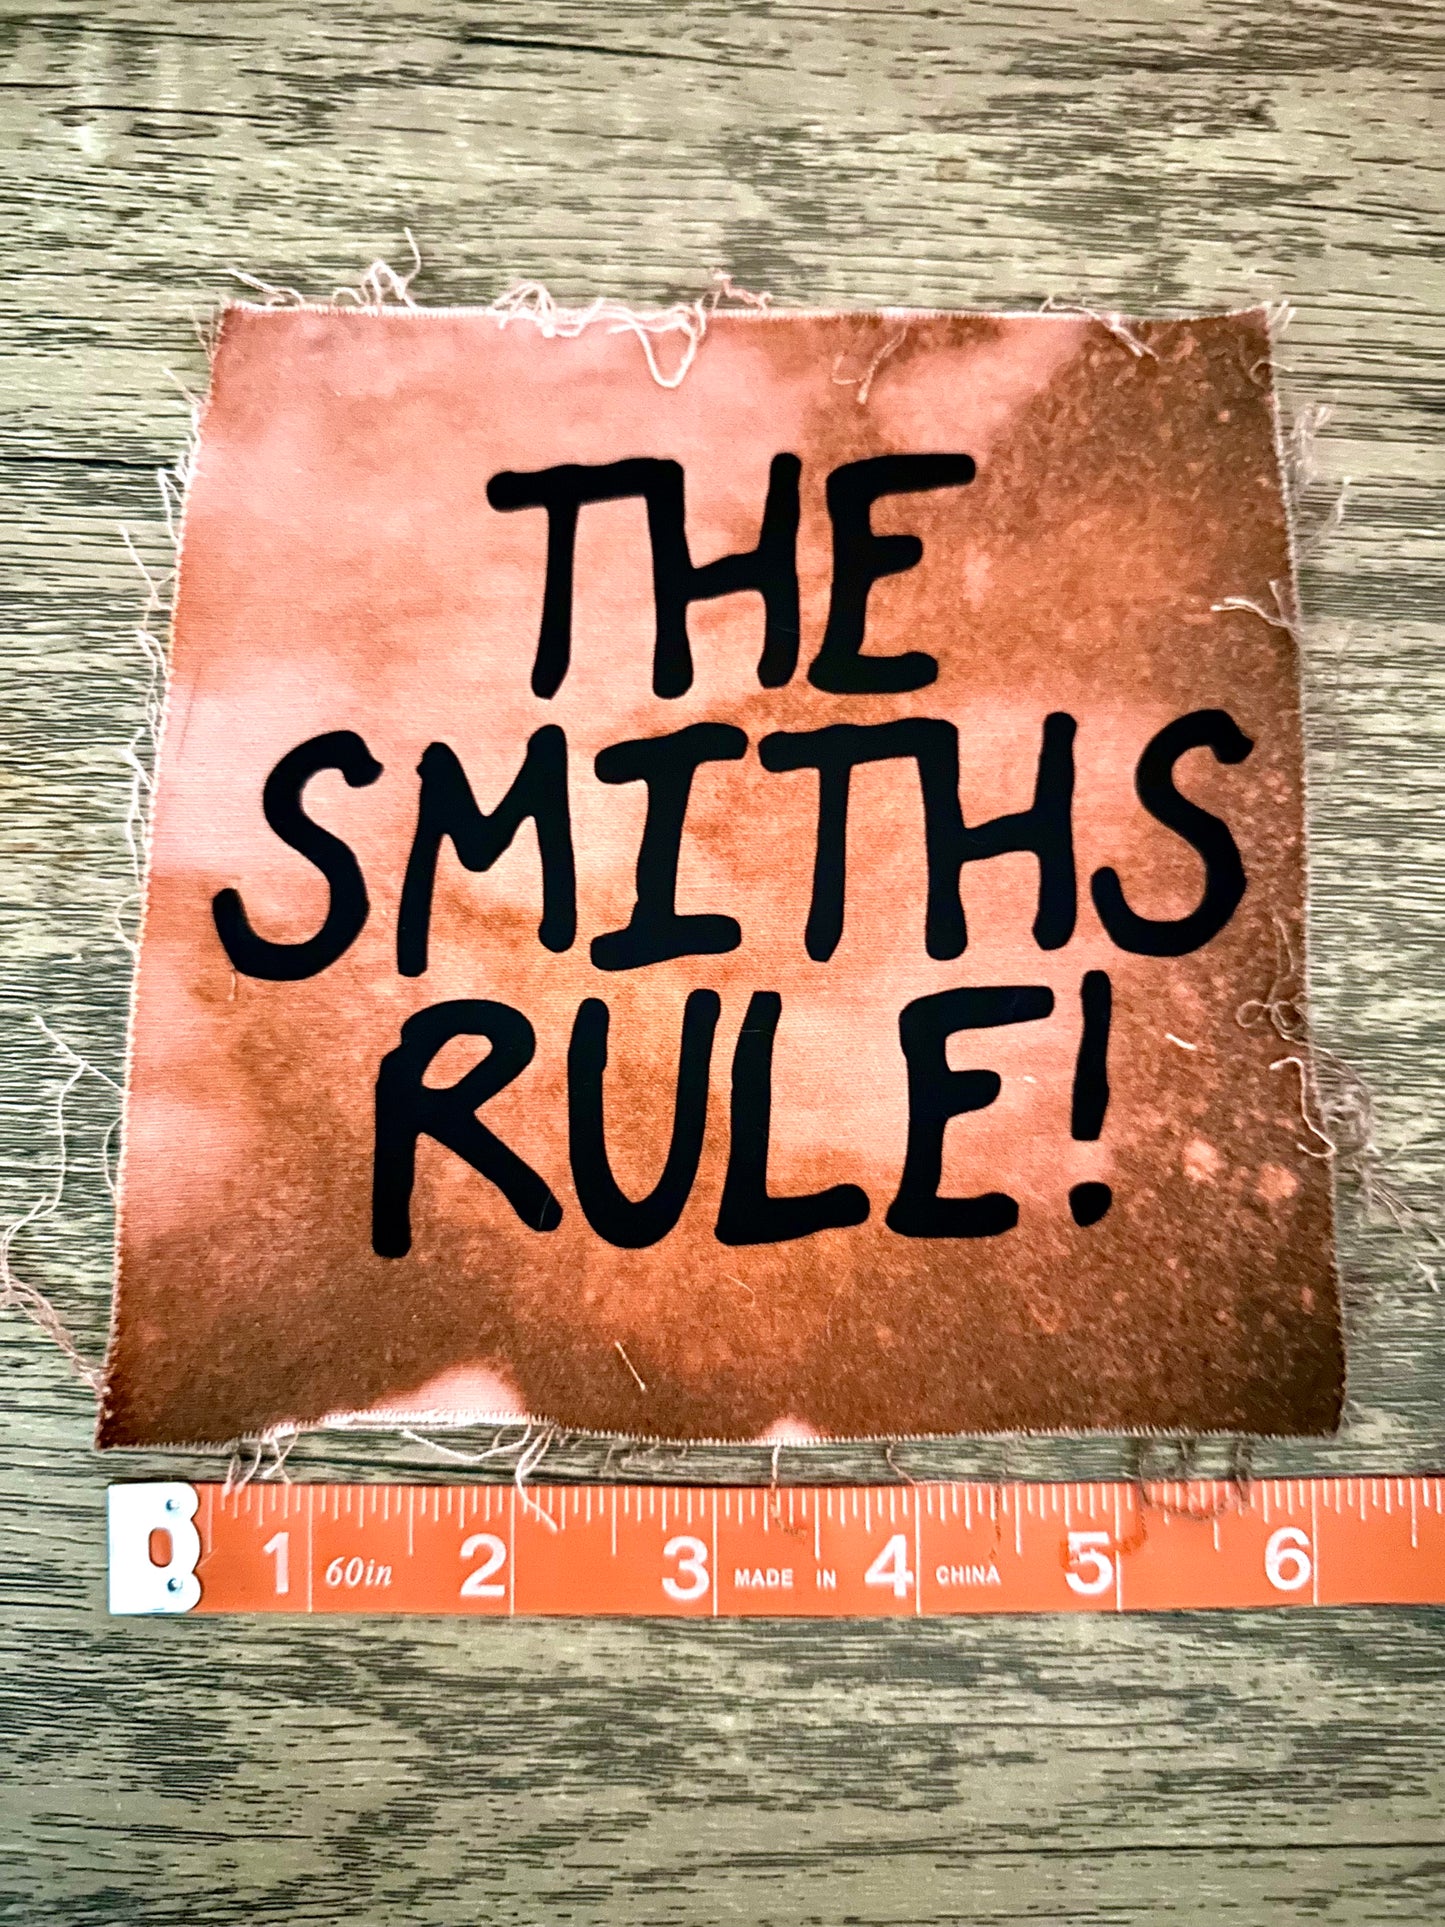 La toppa XL della regola degli Smiths